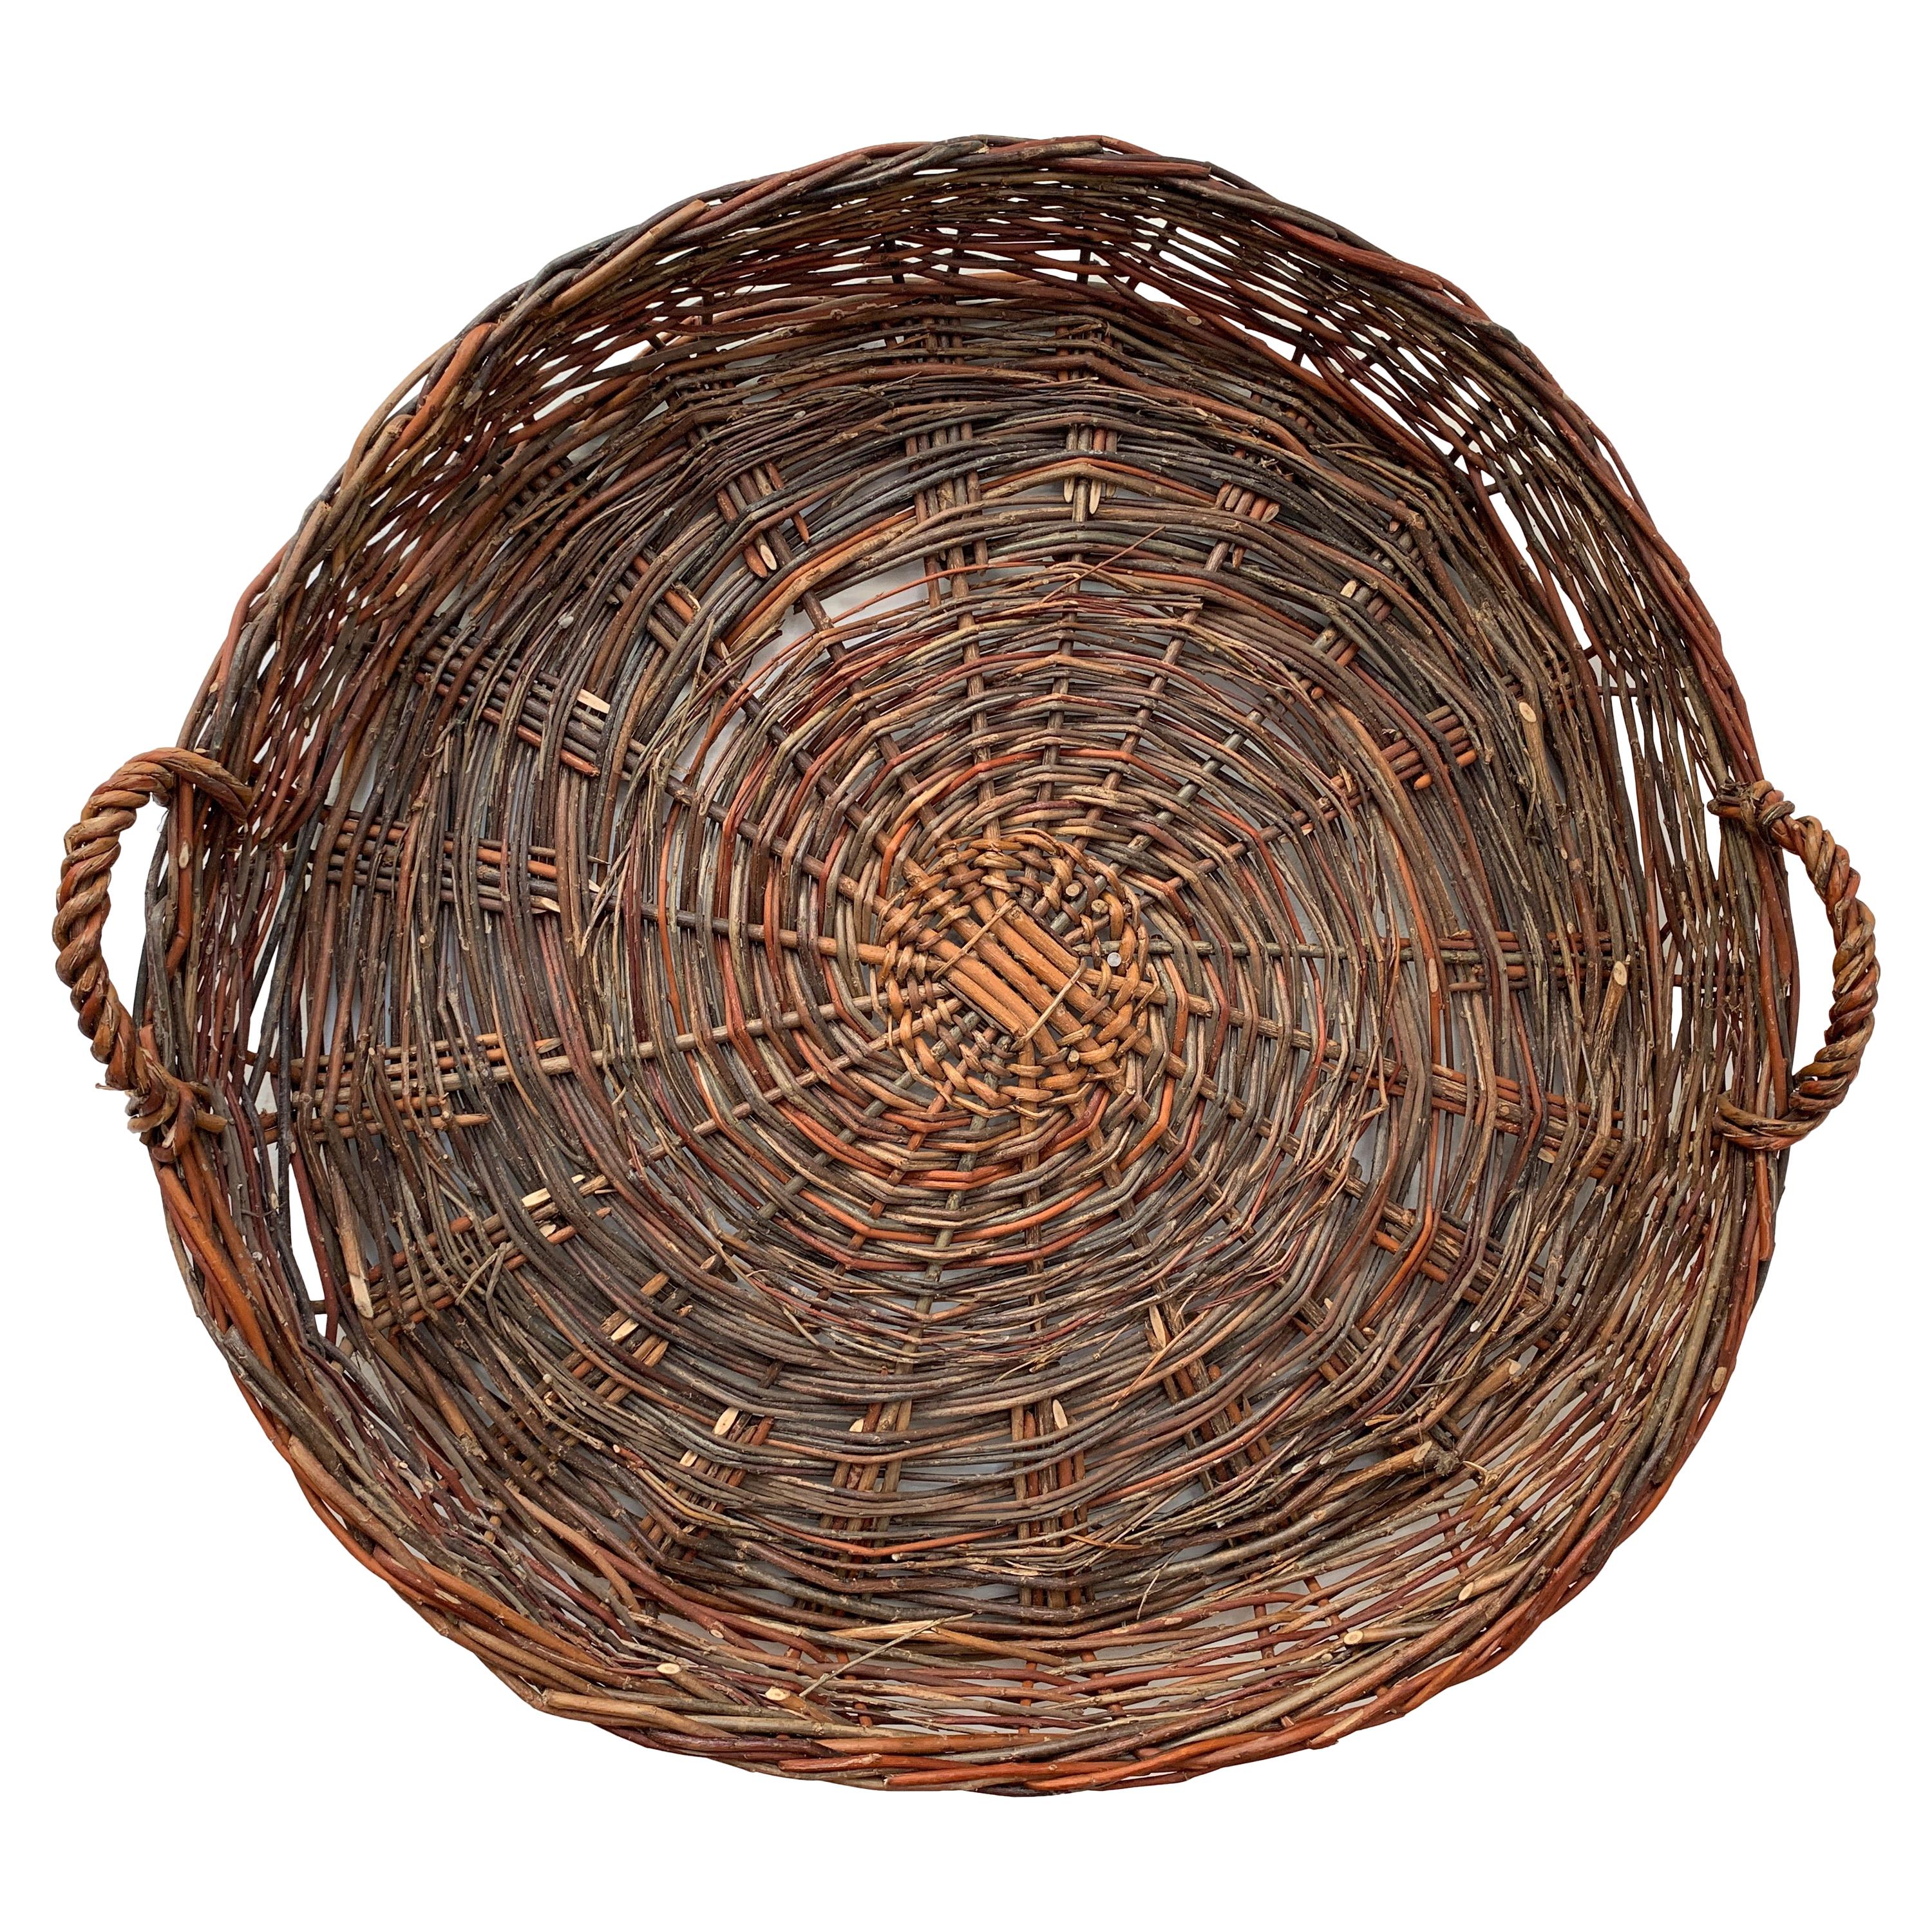 Flat Basket - 178 For Sale on 1stDibs